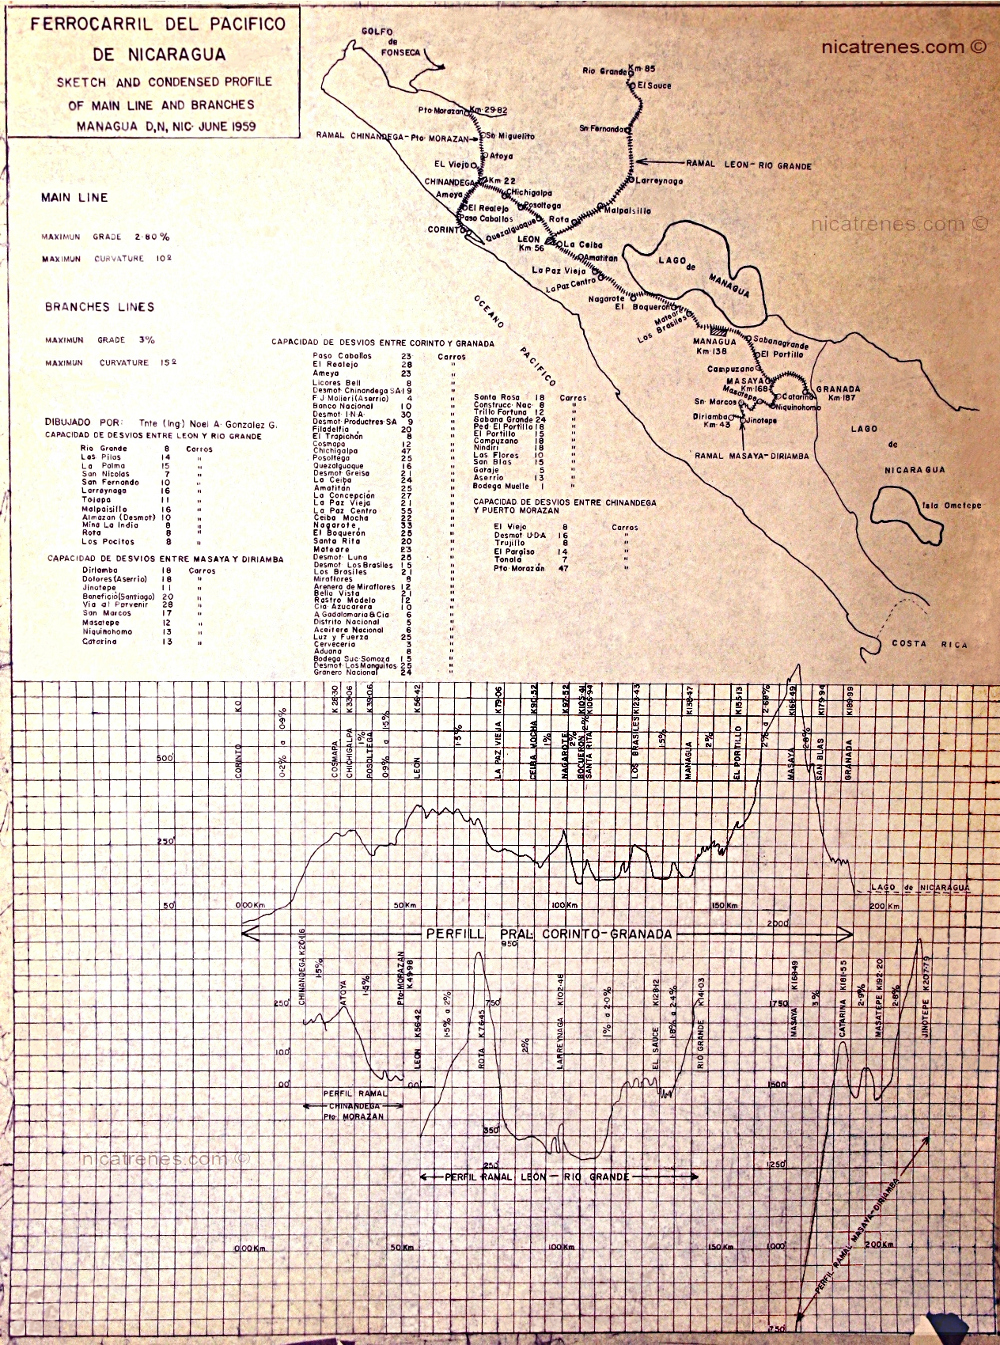 Sketch and elevation, Ferrocarril de Nicaragua, fecha 1959